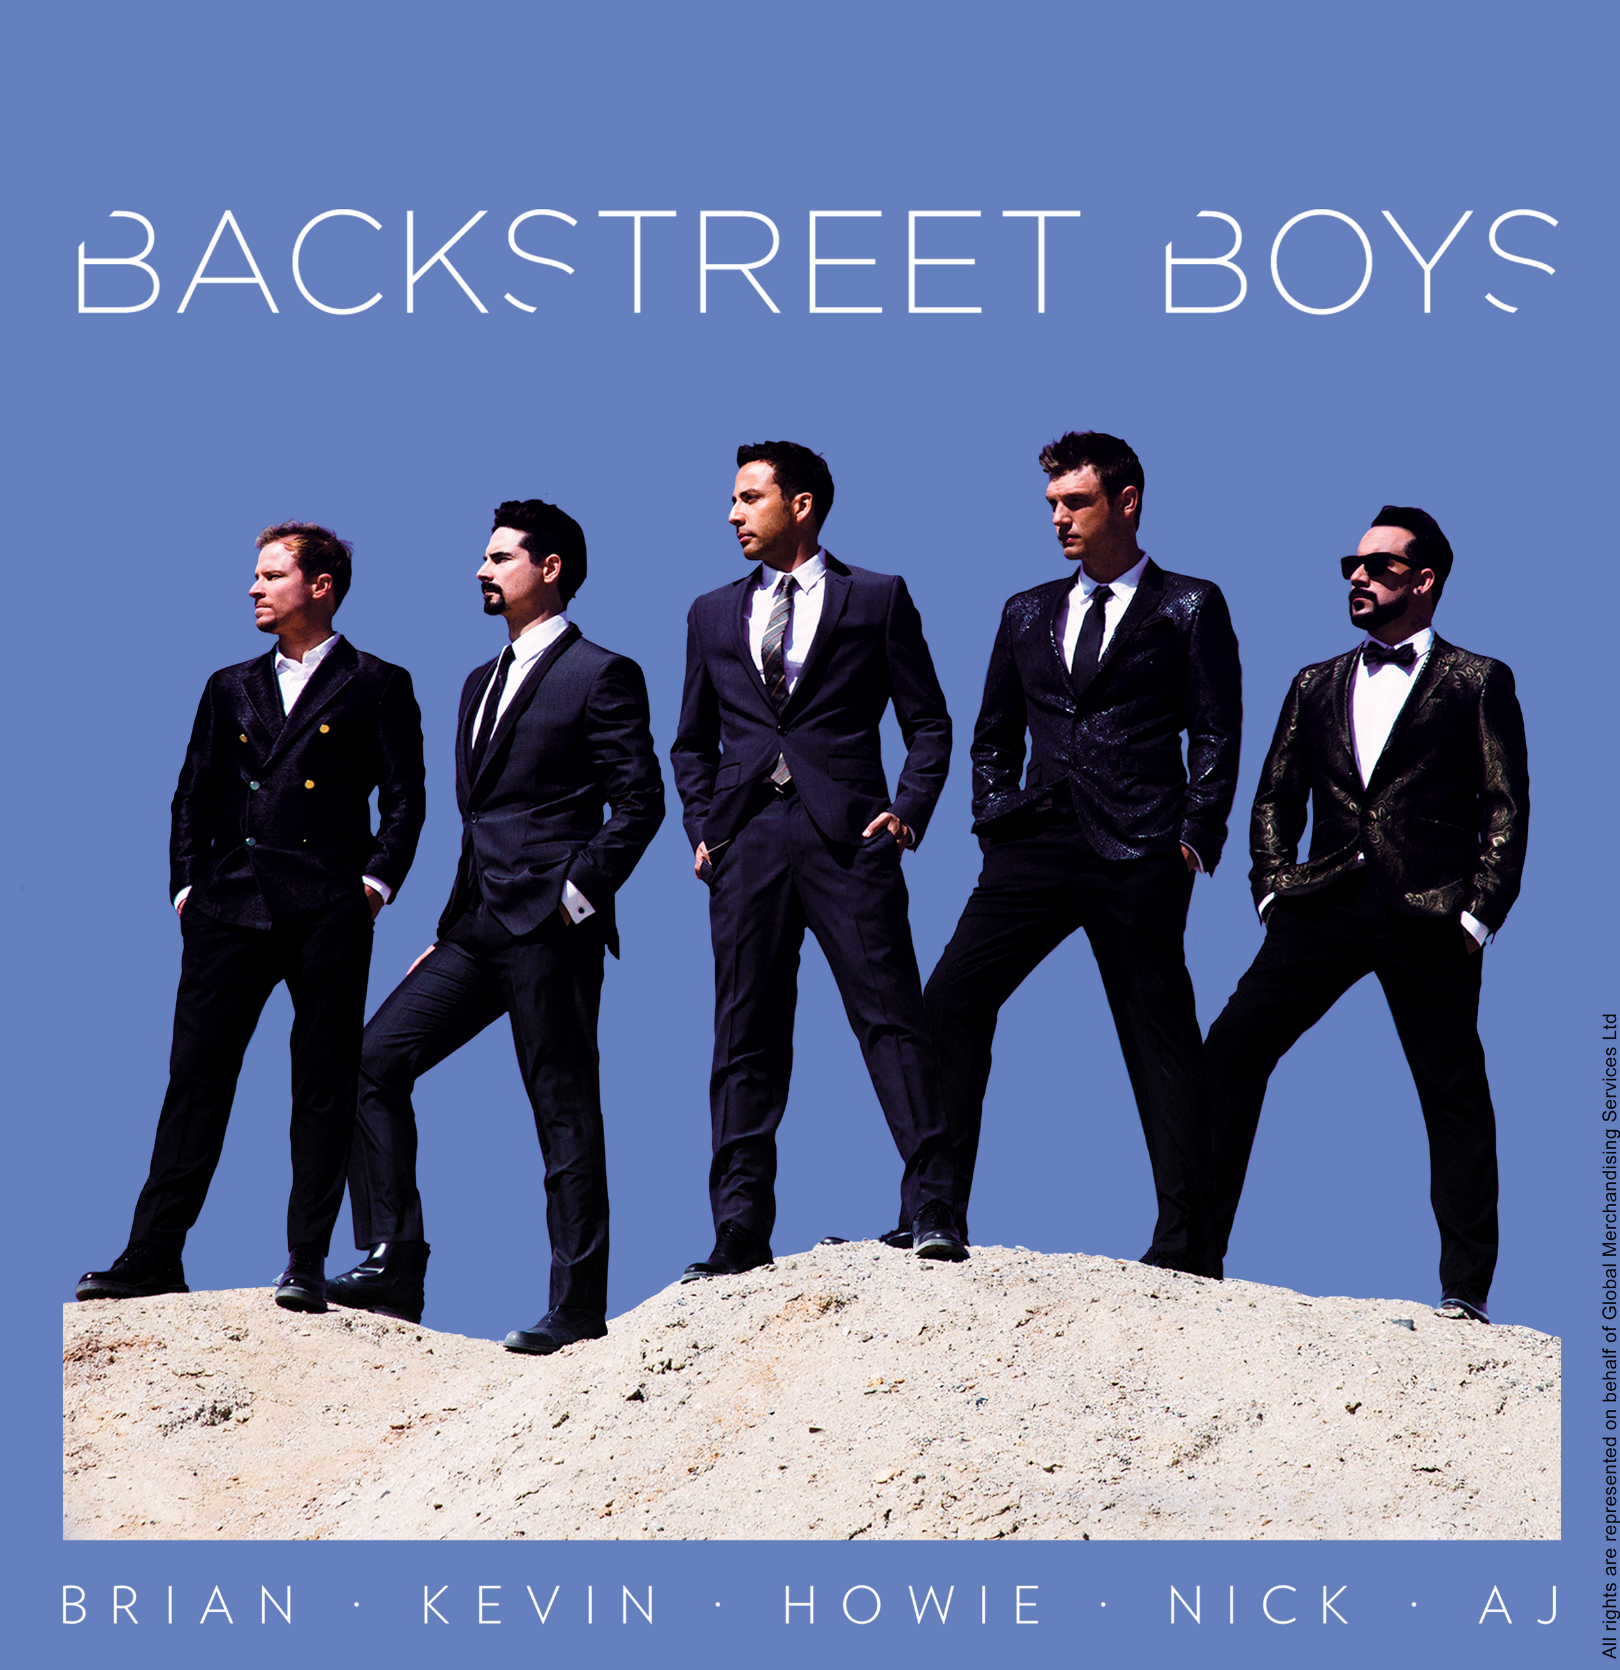 Backstreet boys album. Backstreet boys обложка. Backstreet boys альбомы. Backstreet boys album Cover. Backstreet s back